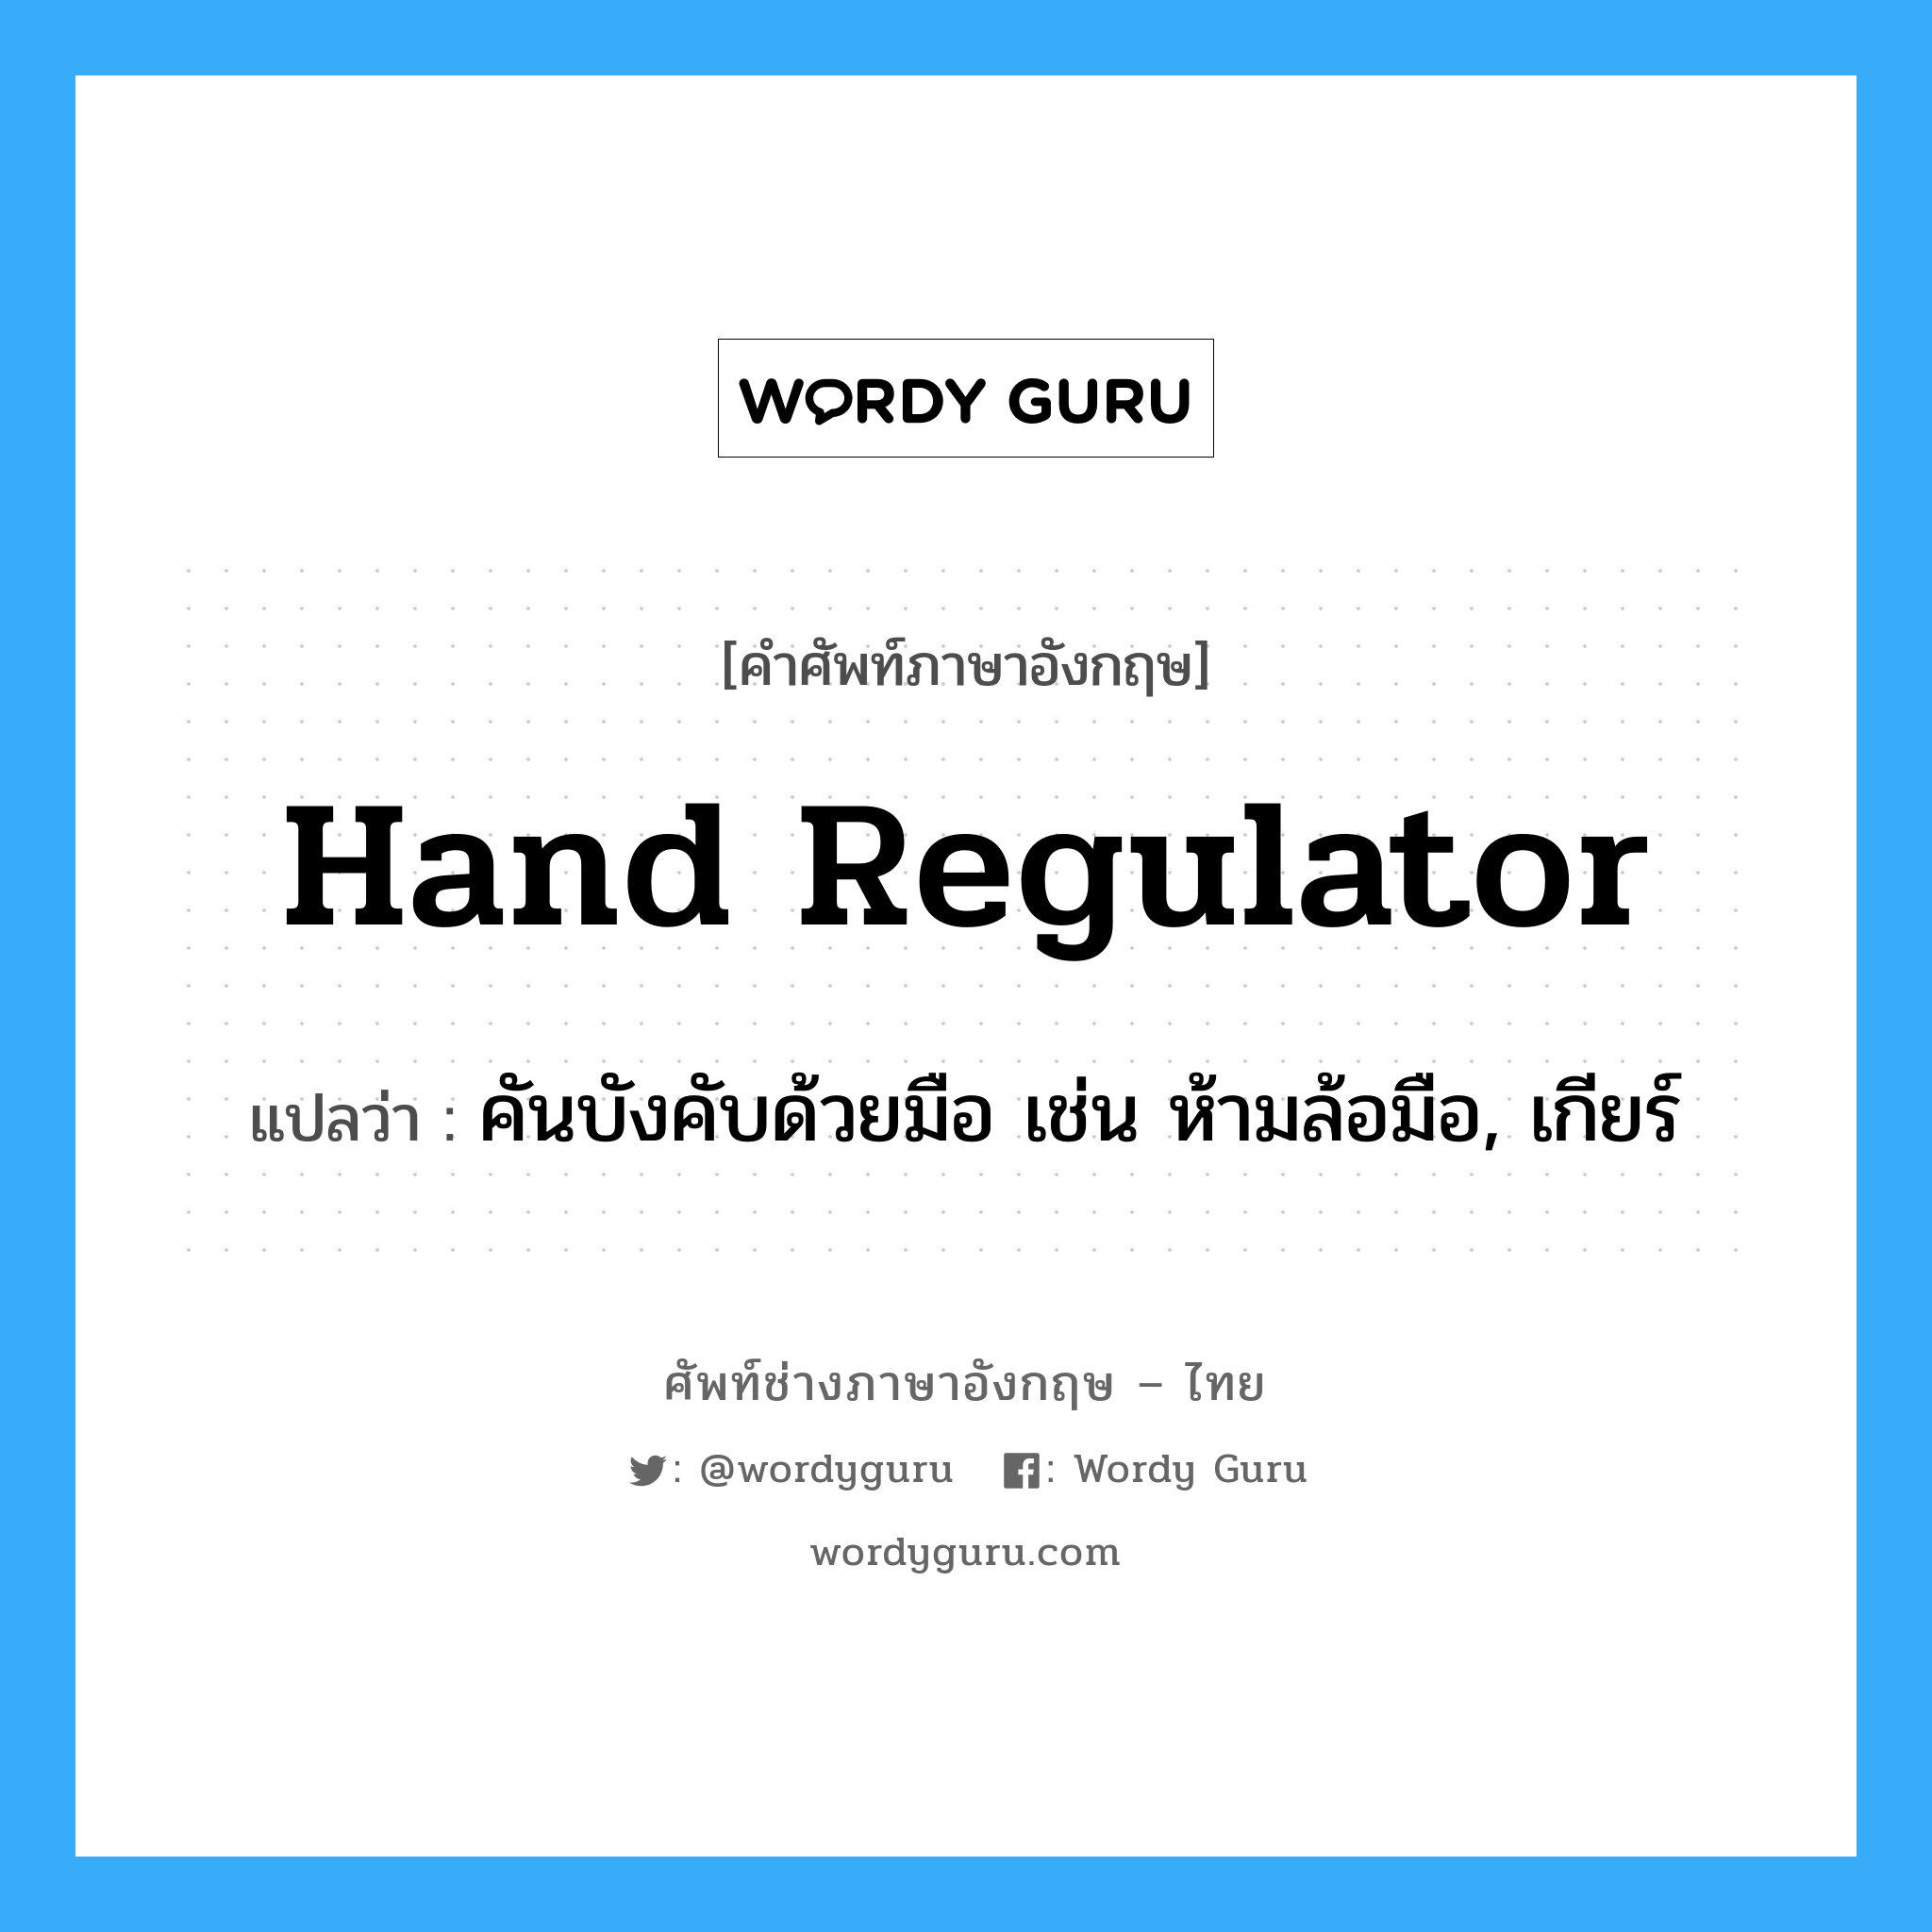 คันบังคับด้วยมือ เช่น ห้ามล้อมือ, เกียร์ ภาษาอังกฤษ?, คำศัพท์ช่างภาษาอังกฤษ - ไทย คันบังคับด้วยมือ เช่น ห้ามล้อมือ, เกียร์ คำศัพท์ภาษาอังกฤษ คันบังคับด้วยมือ เช่น ห้ามล้อมือ, เกียร์ แปลว่า hand regulator